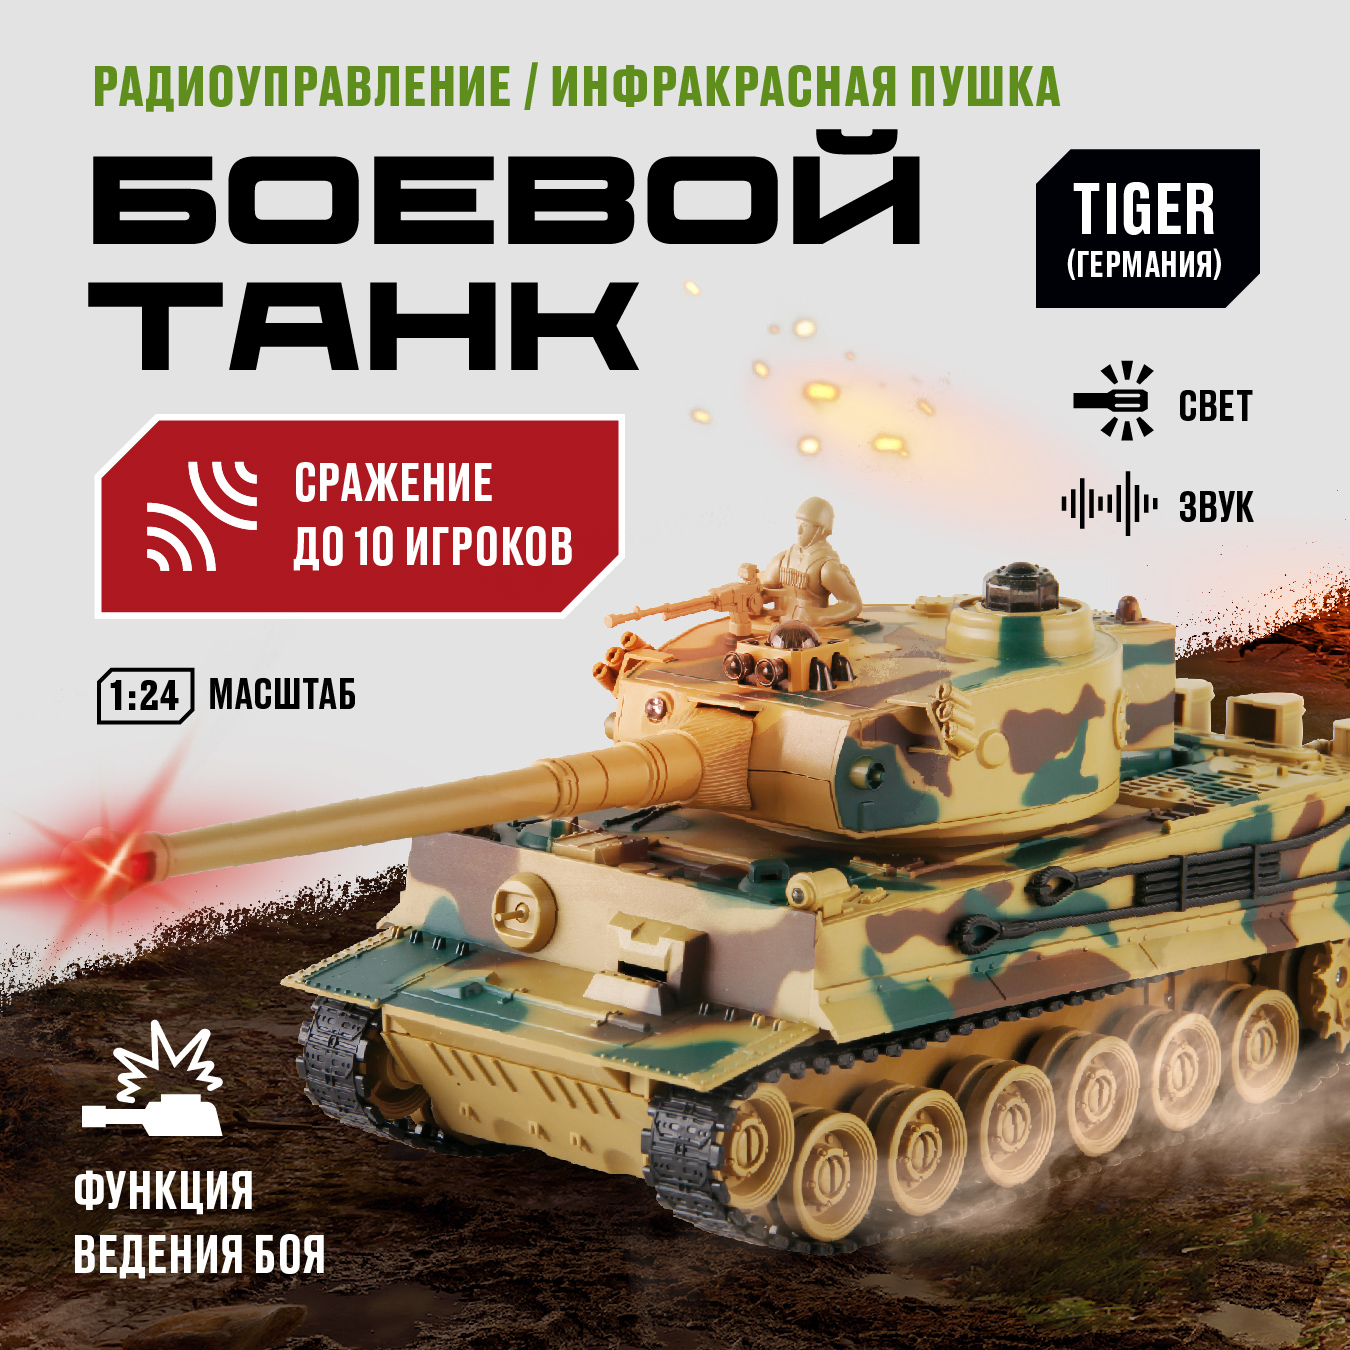 Танк TIGER на пульте радиоуправляемый Crossbot, 1:24, 870627 vstank танк tiger i airsoft grey